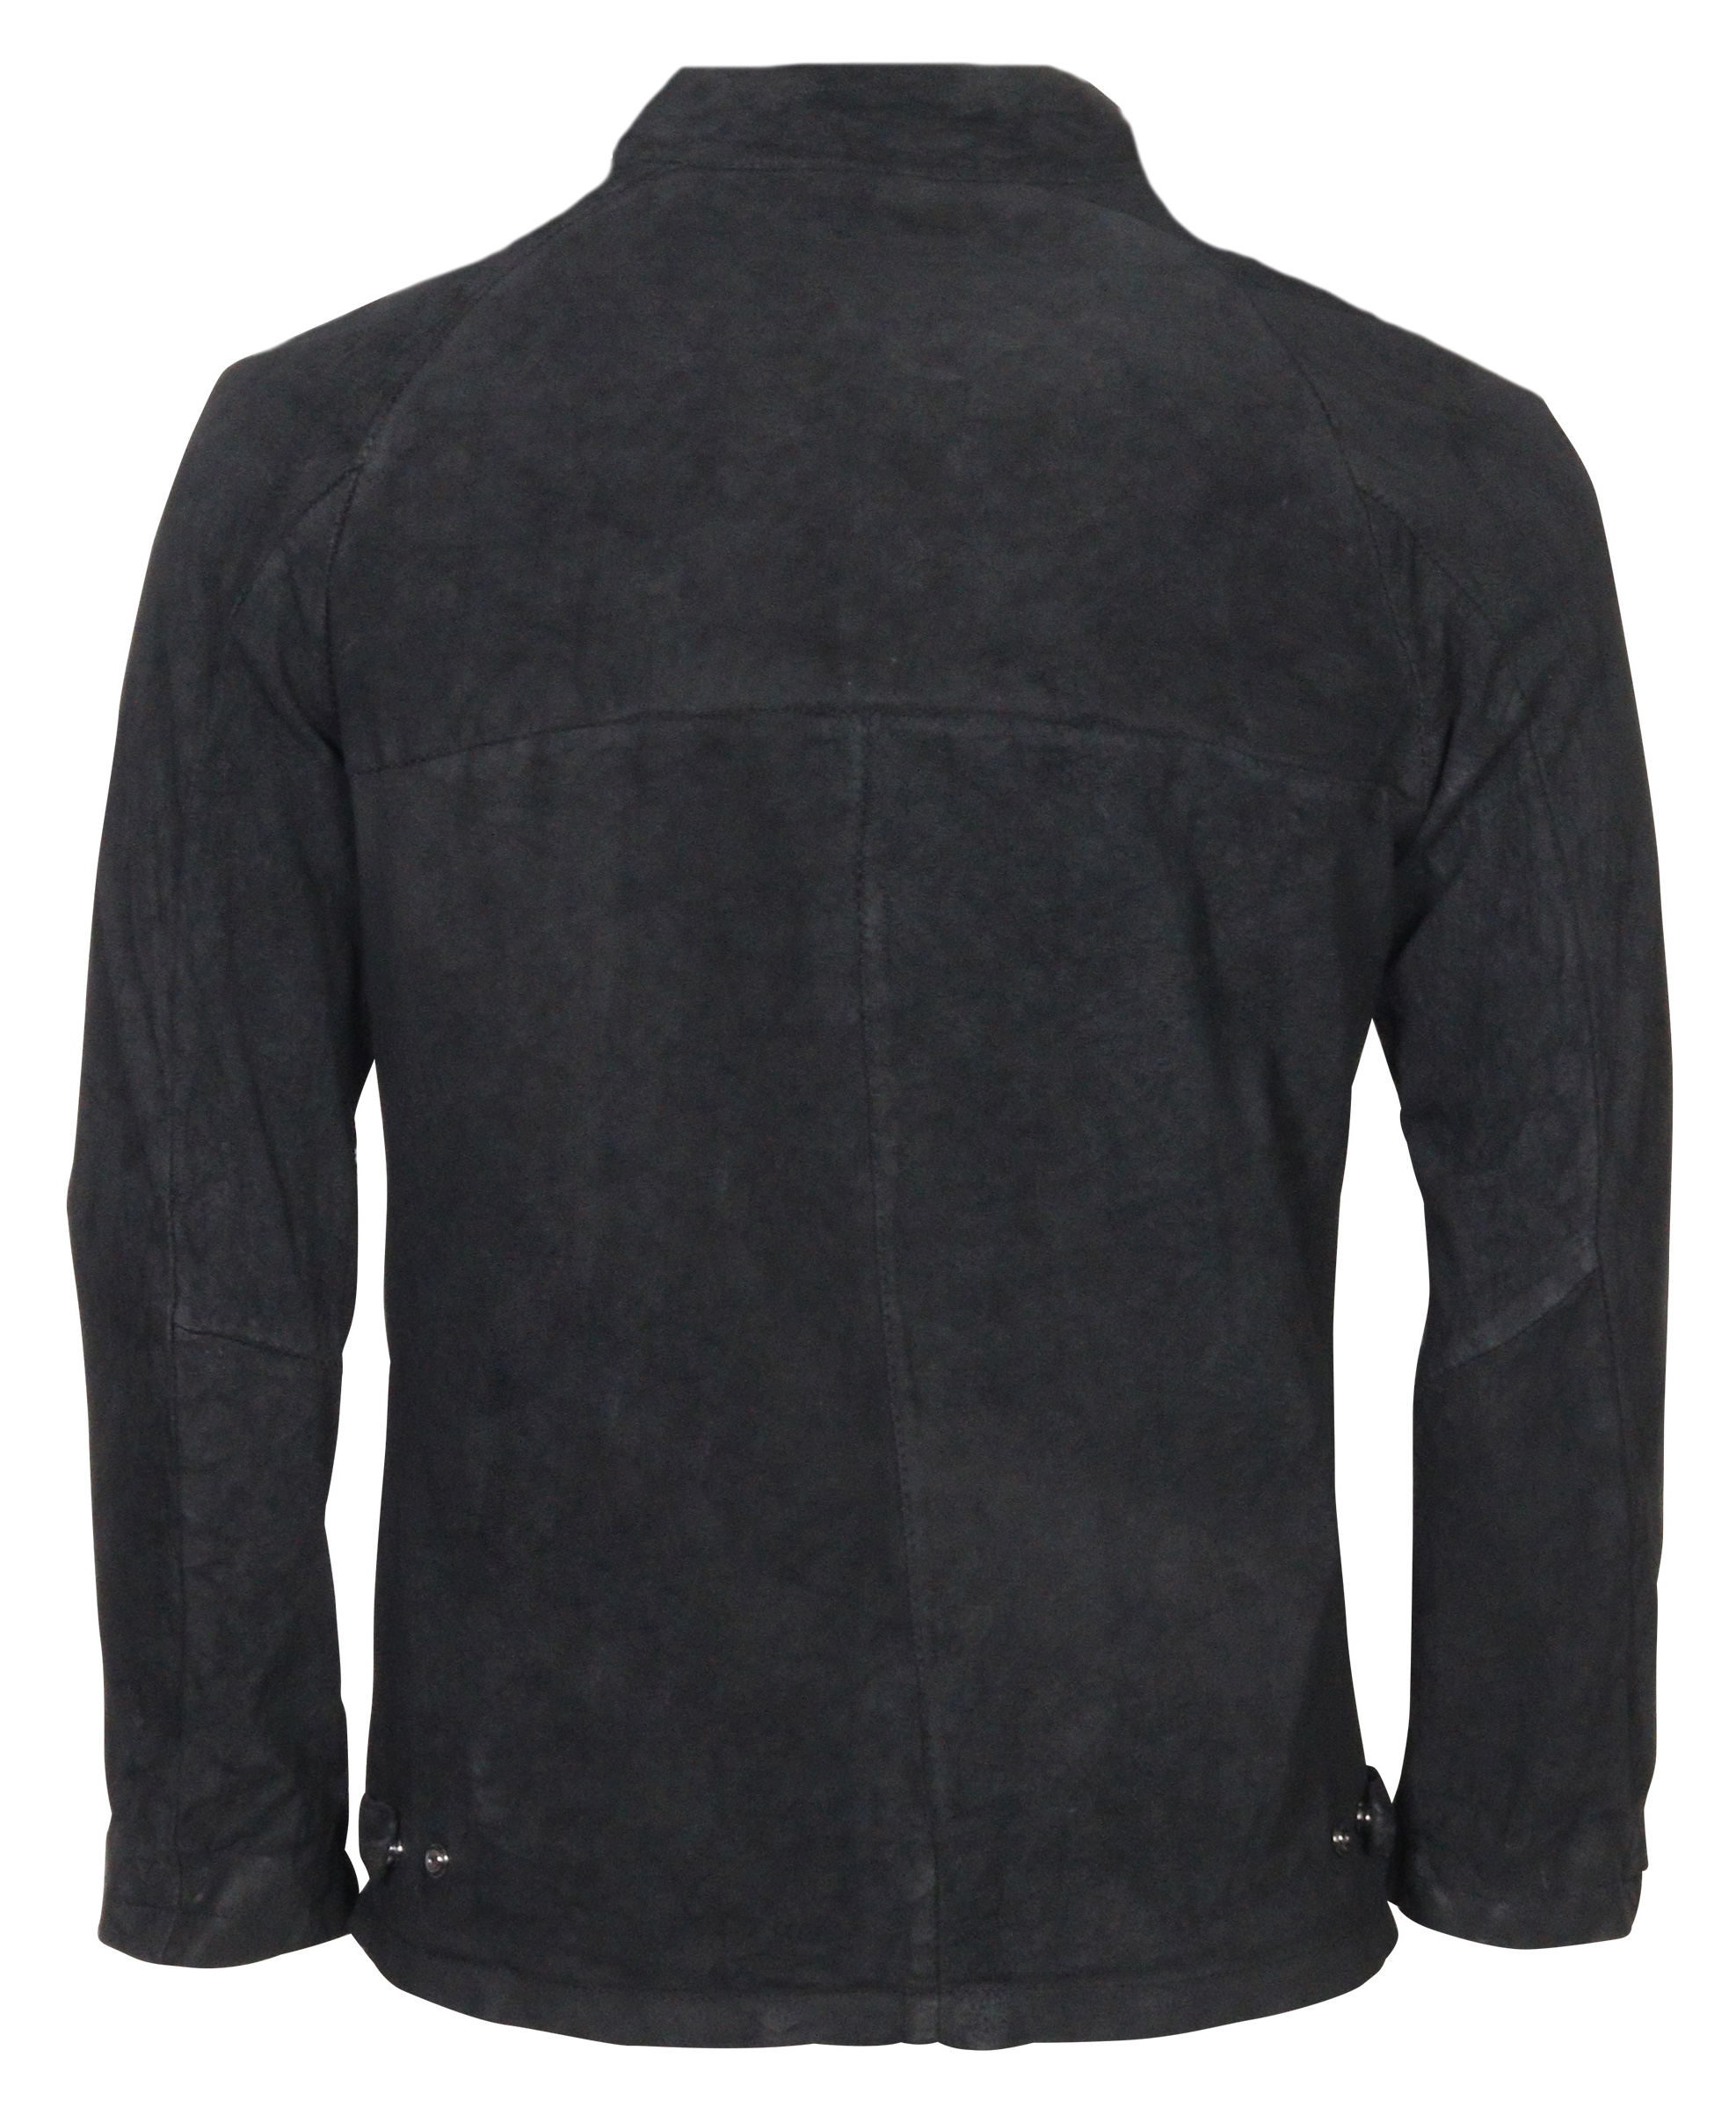 Giorgio Brato Brushed Vegetal Leather Jacket Black